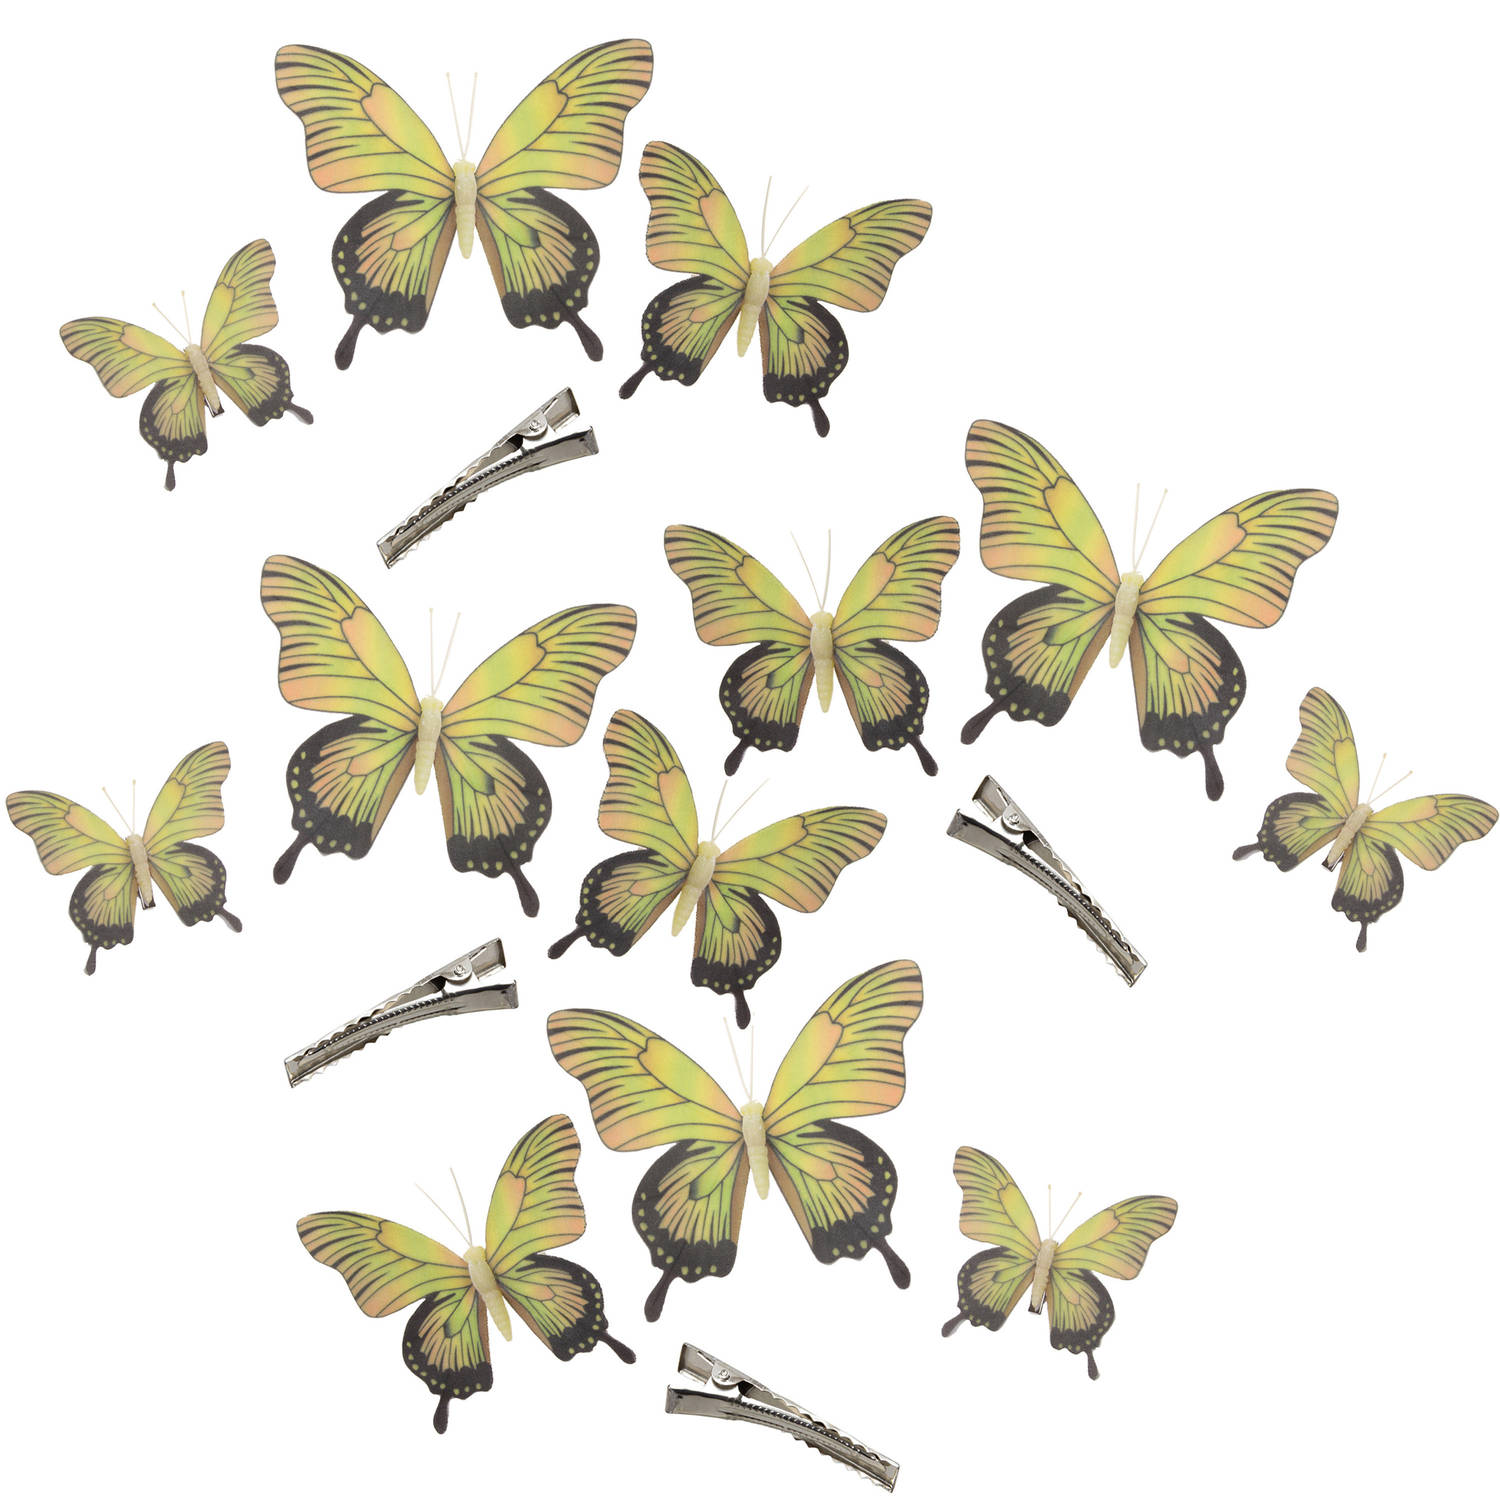 12x Stuks Decoratie Vlinders Op Clip Geel 3 Formaten 12-16-20 Cm Hobbydecoratieobject